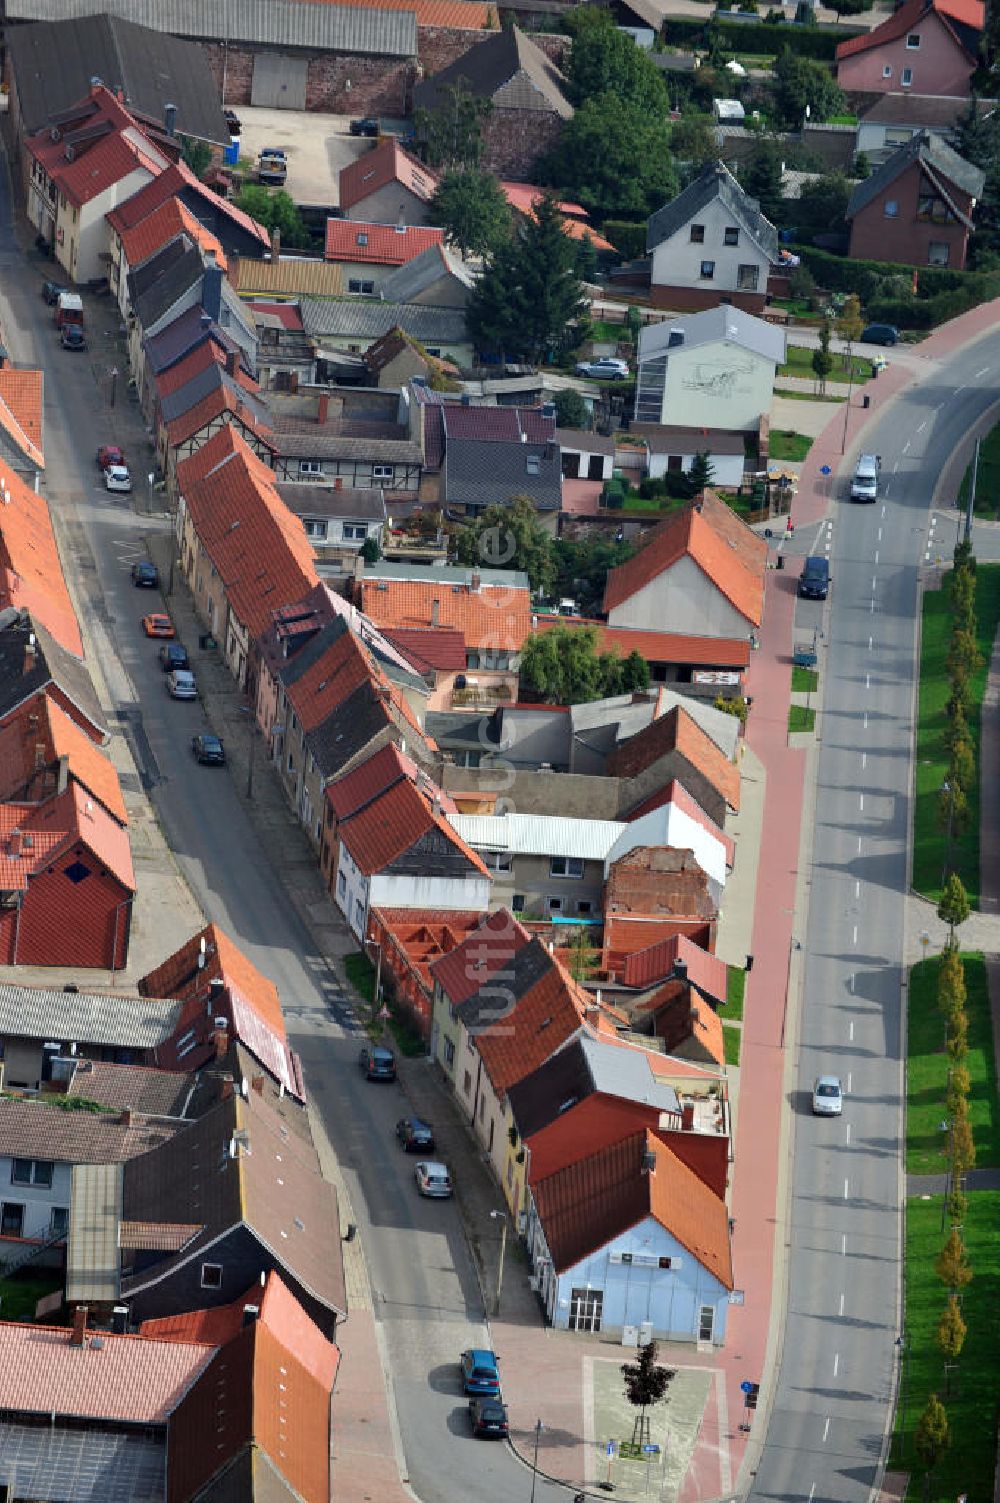 Luftaufnahme Kelbra - Wohnsiedlung aus Fachwerkhäusern in der Innenstadt von Kelbra in Sachsen-Anhalt